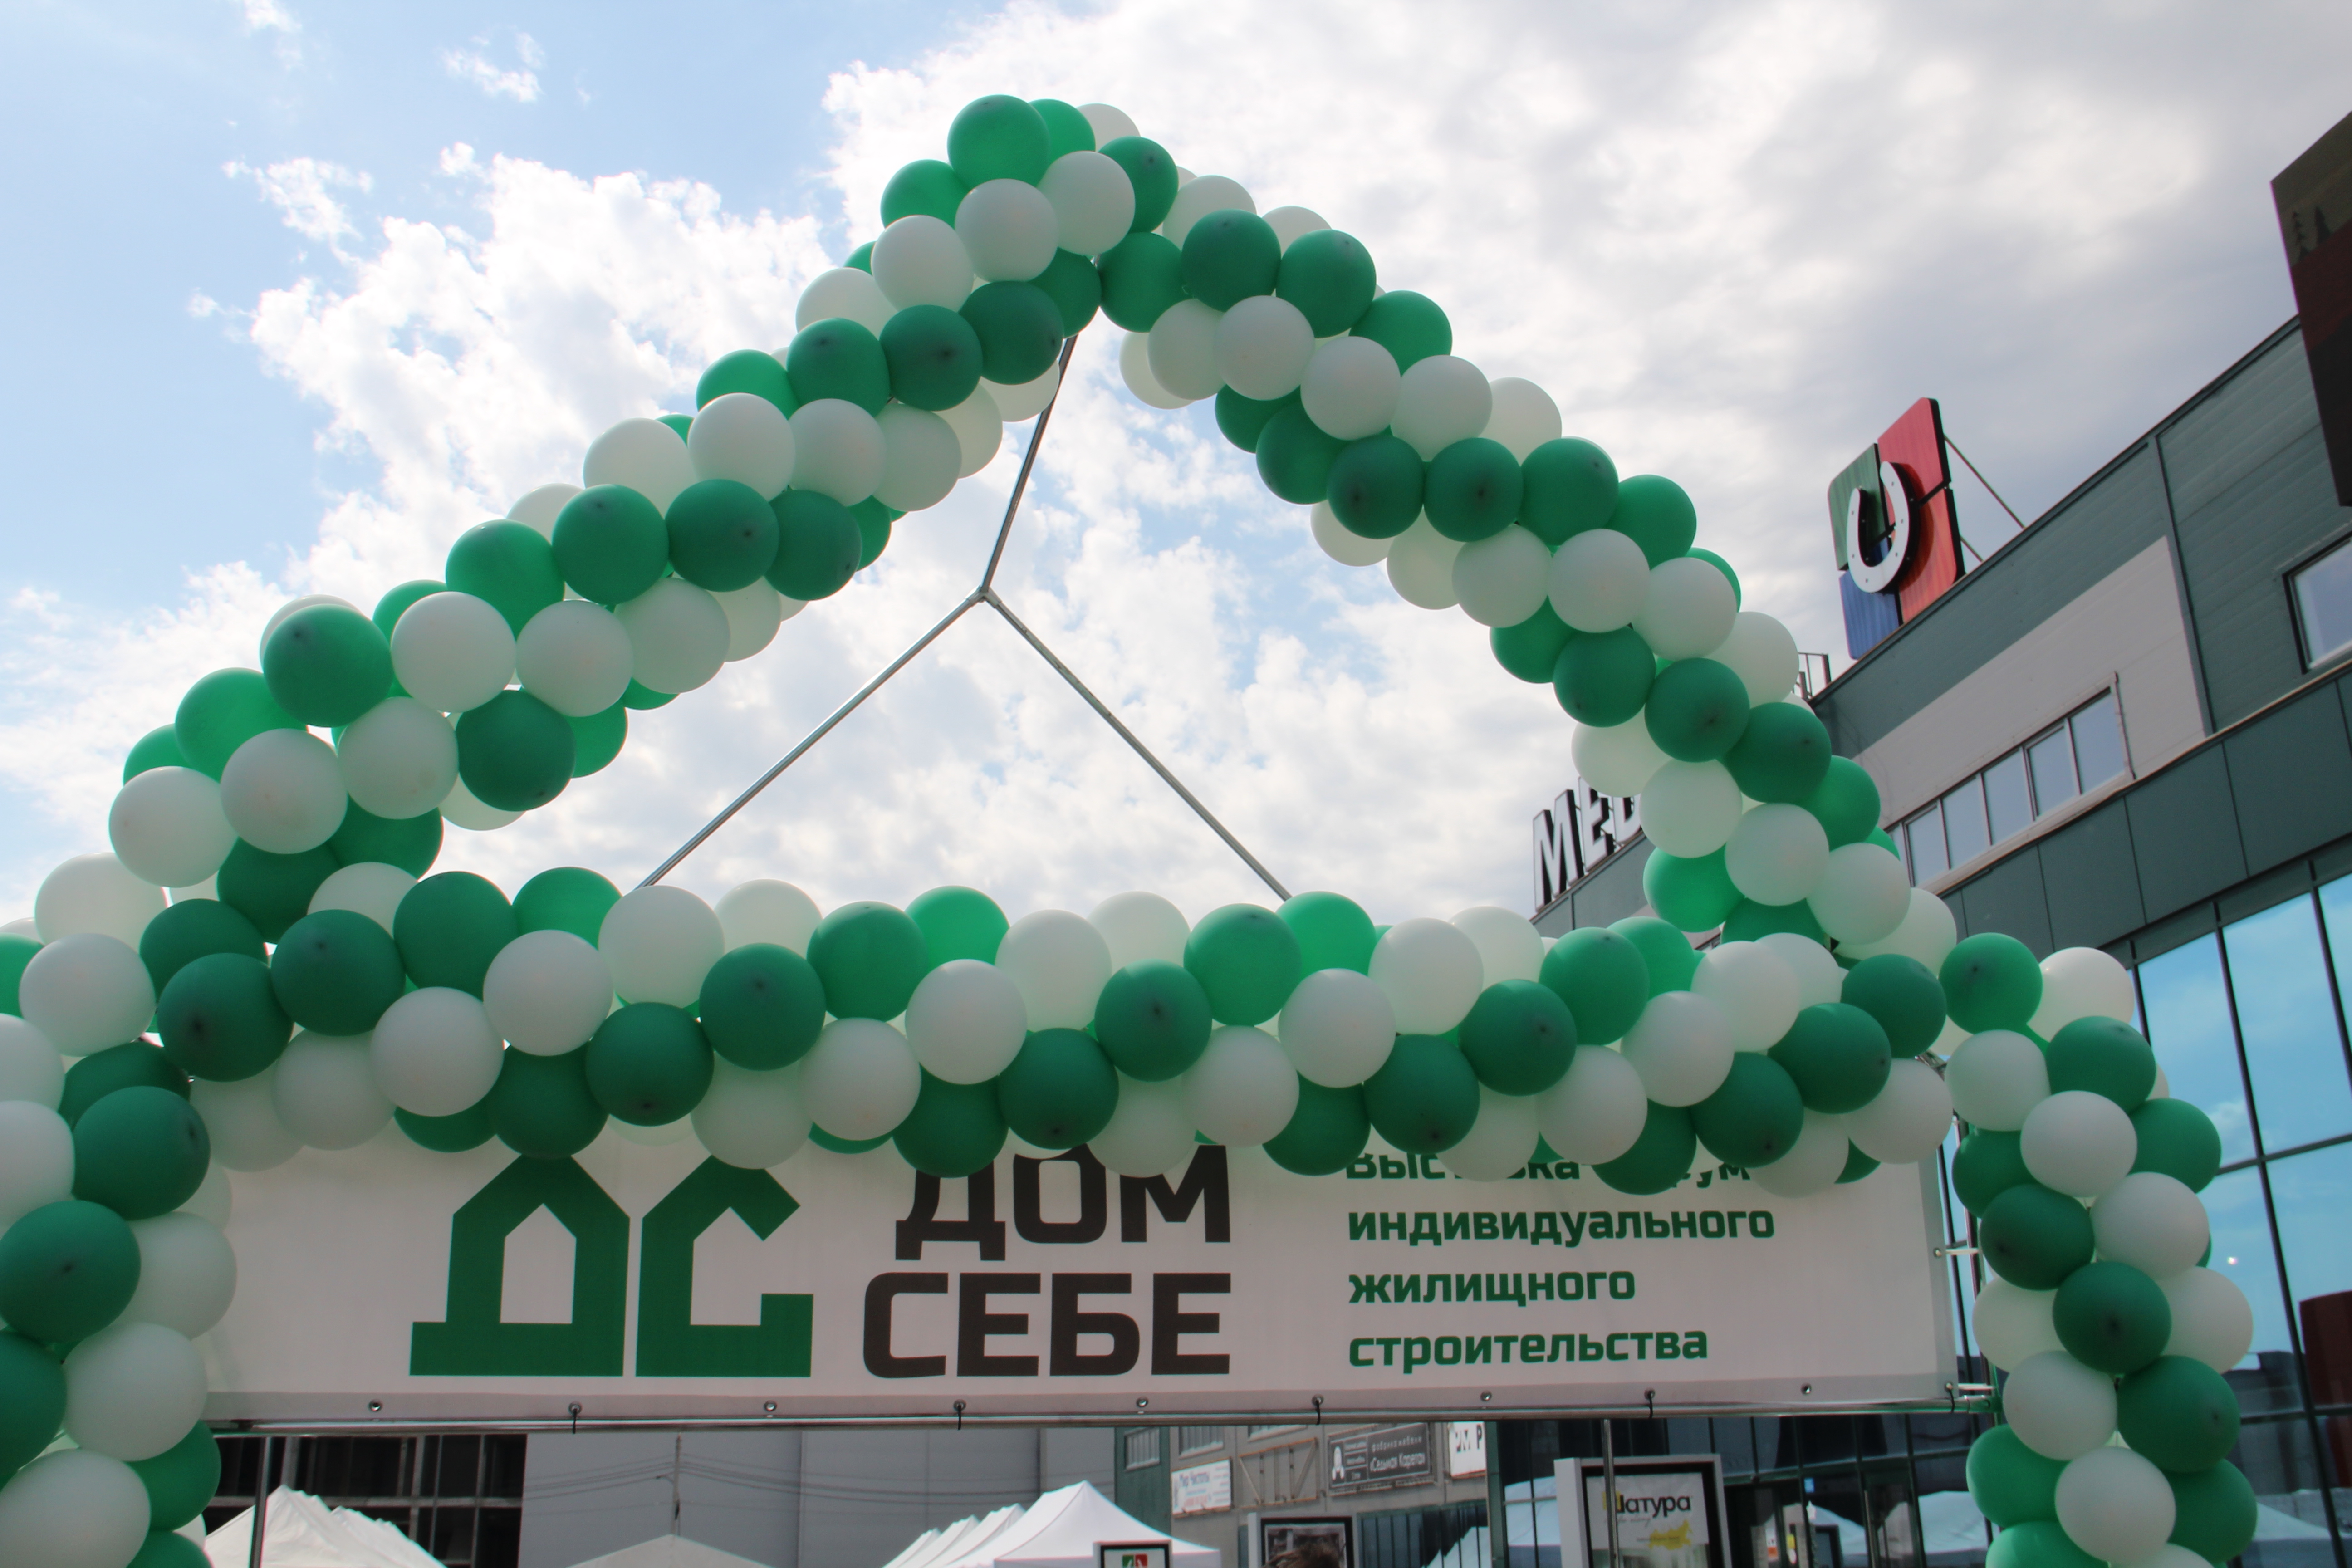 «Дом себе»: во Владимире состоялась первая выставка-форум для желающих построить собственный дом